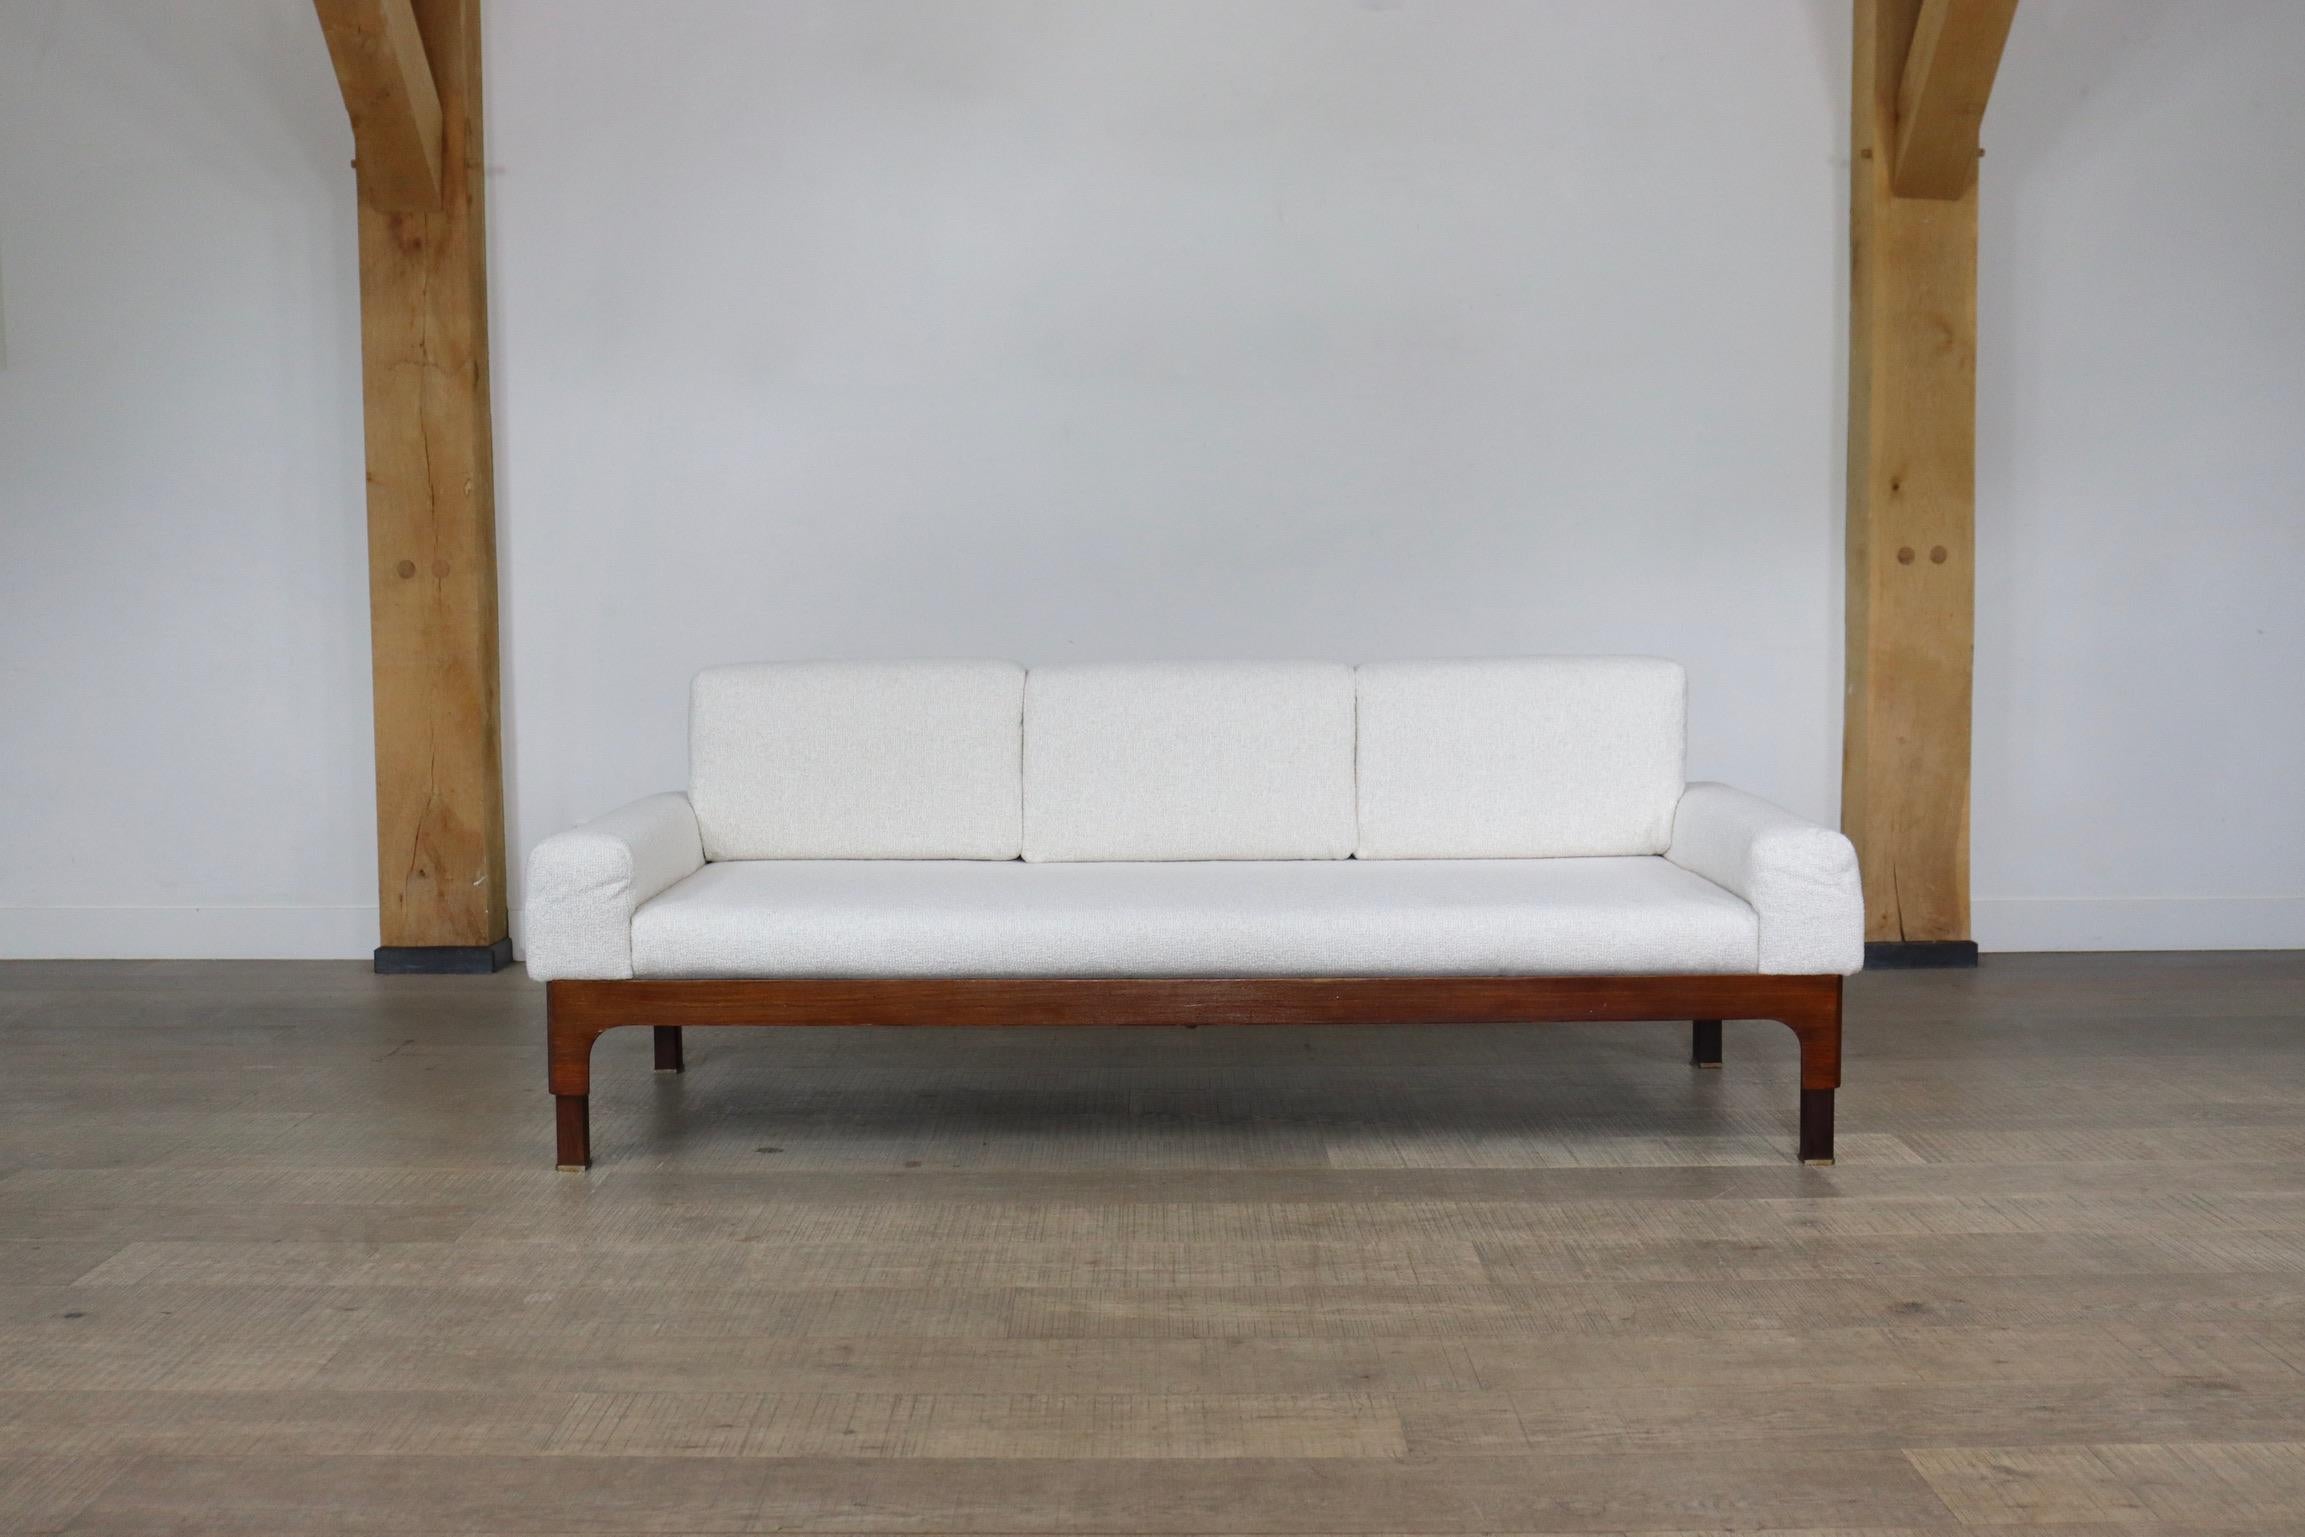 Wunderschönes Sofa 'Romantica' von Piero Ranzani für Elam aus Palisanderholz, Italien 1950er Jahre.
Die geraden Linien der Holzkonstruktion heben sich schön von den abgerundeten Formen der Kissen und der Sitzfläche ab. Einige schöne Details finden